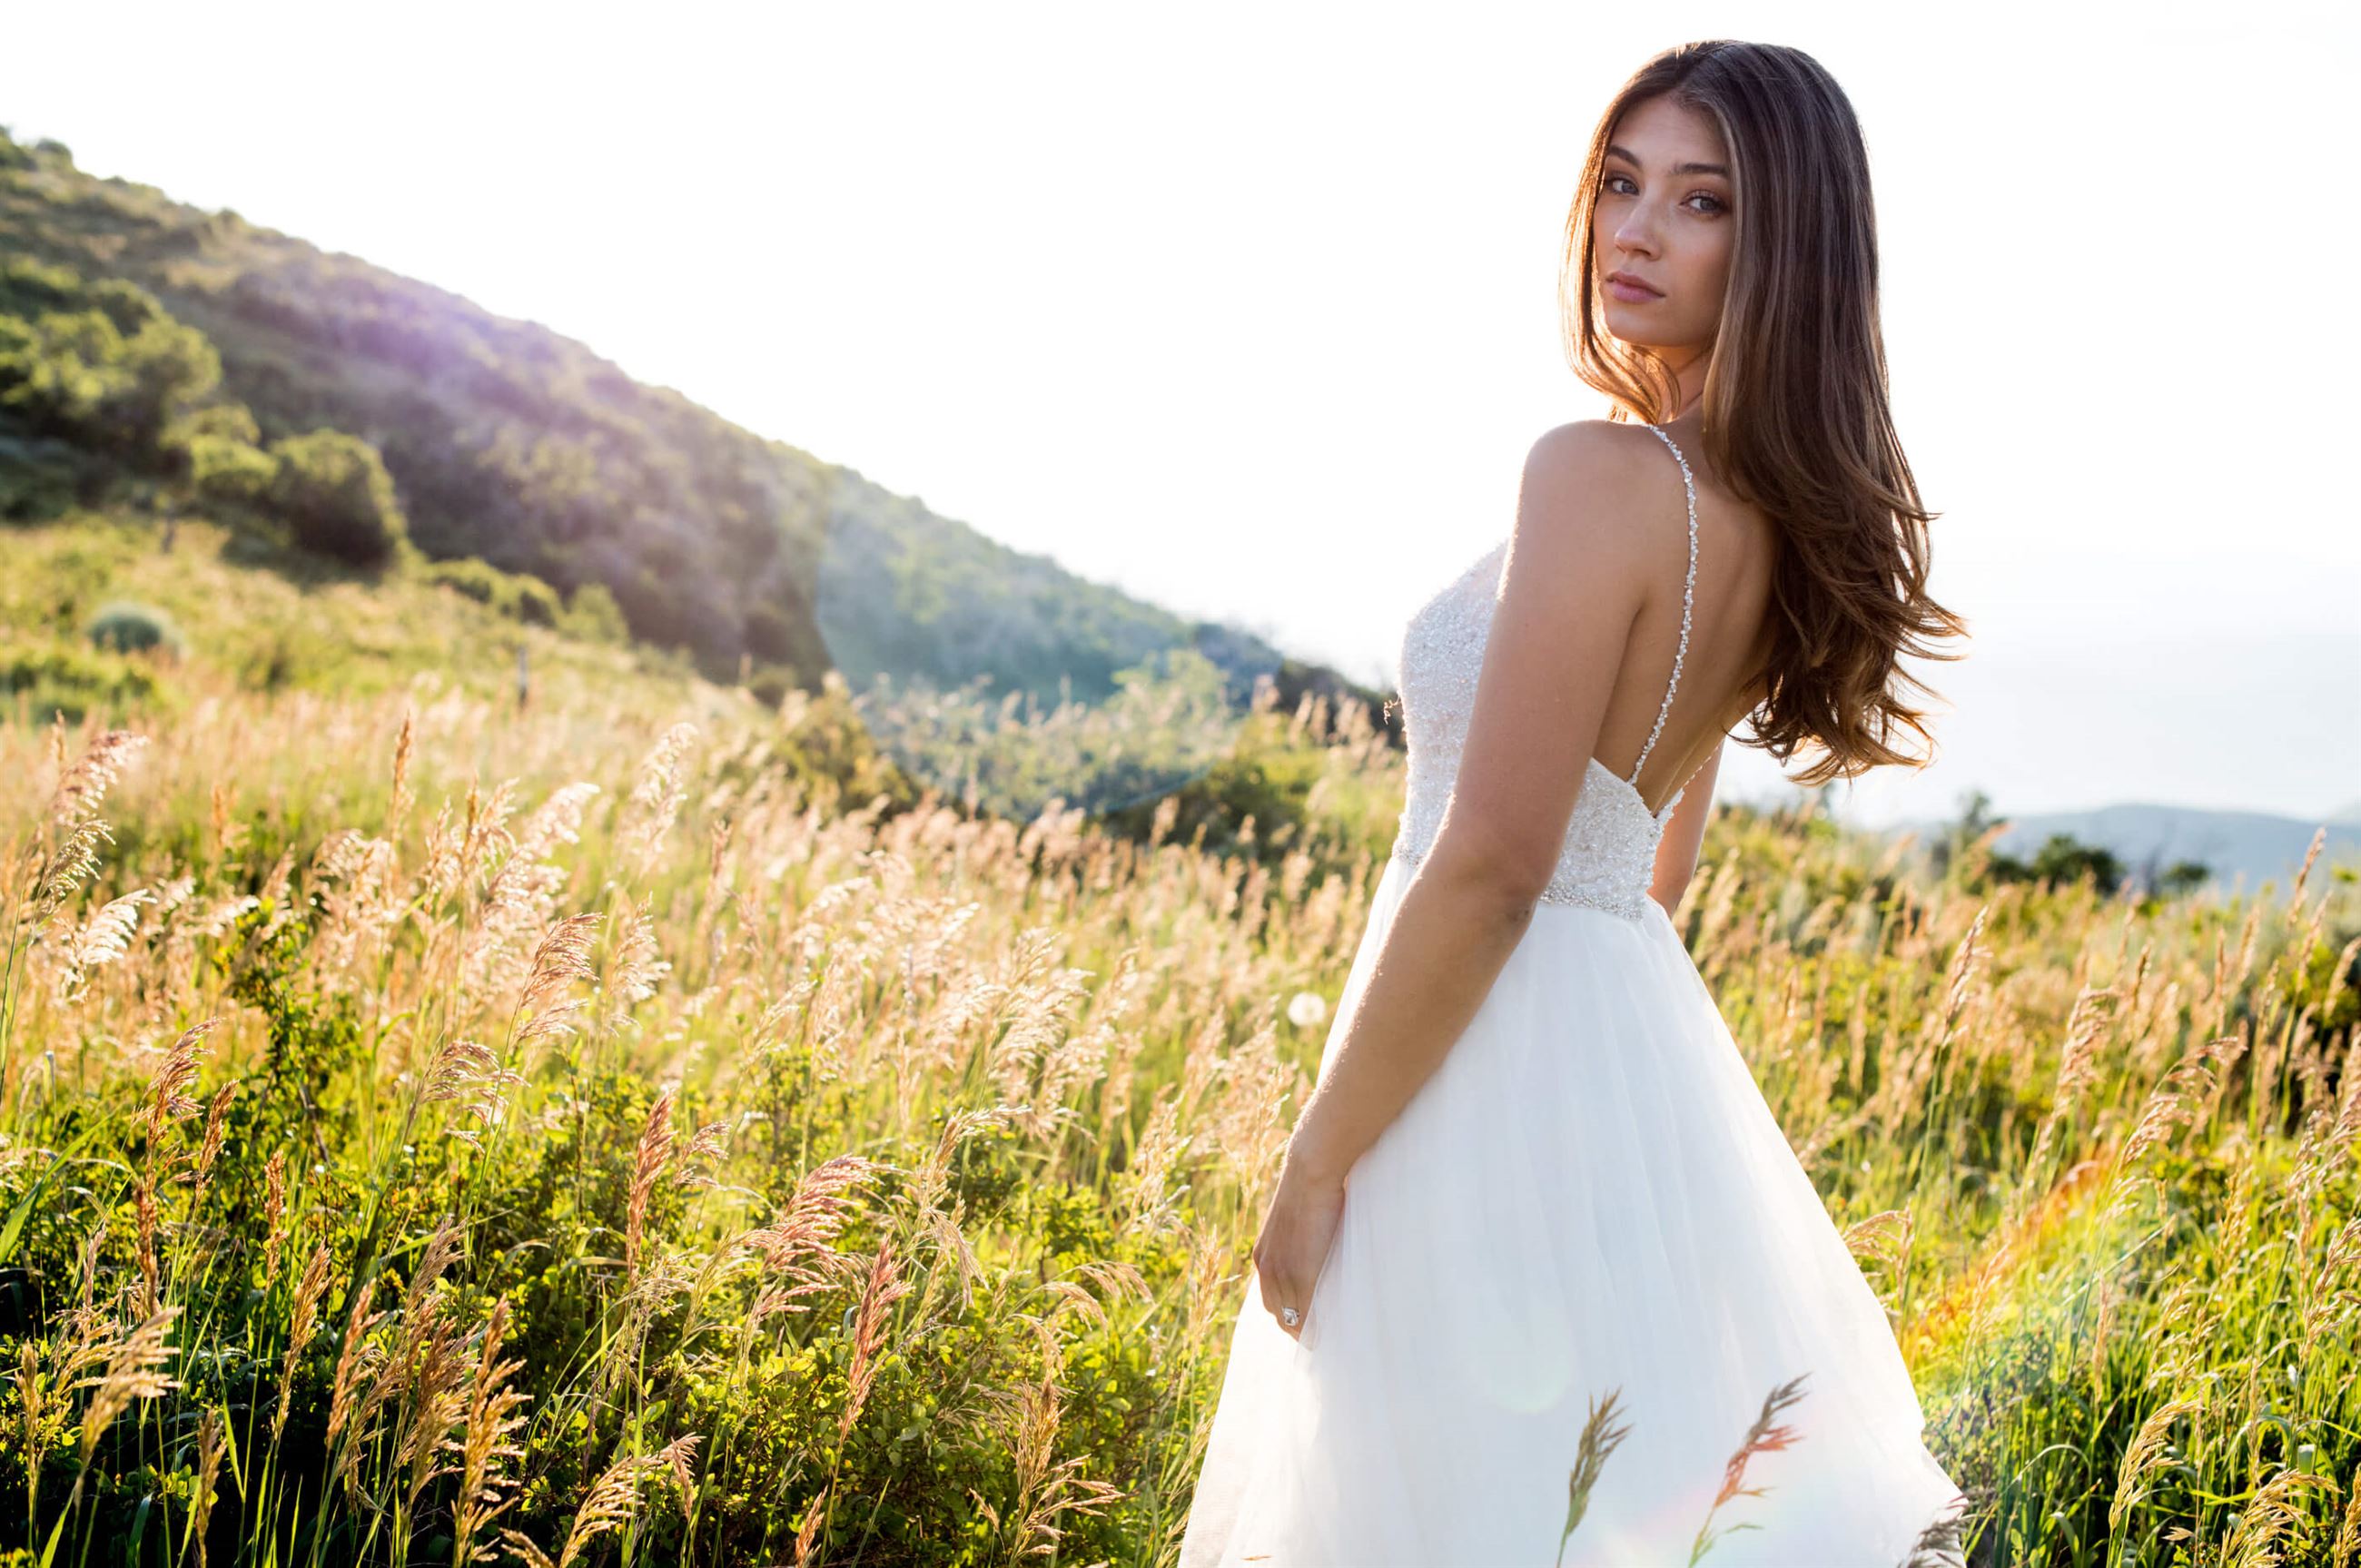 Brunette model in white wedding dress in field